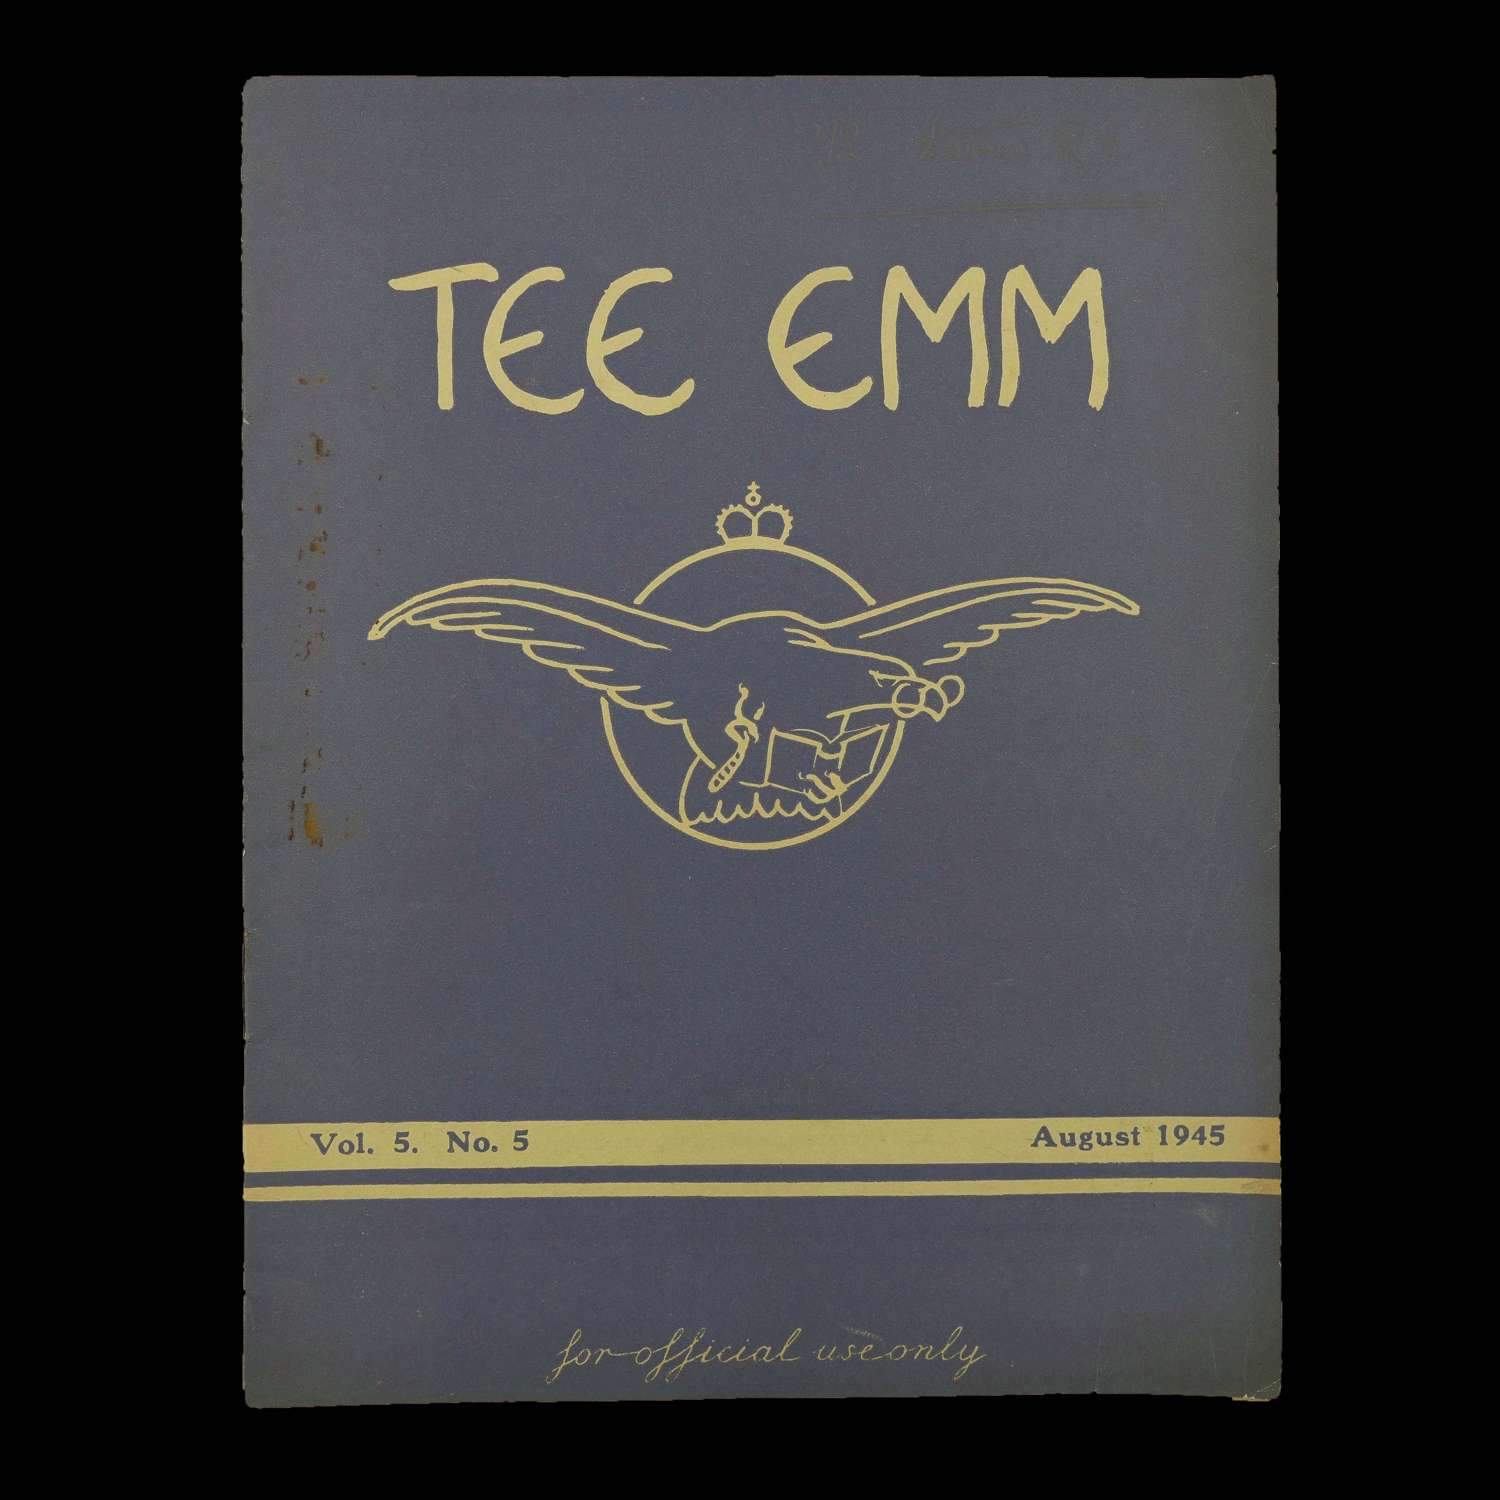 Tee Emm, August 1945